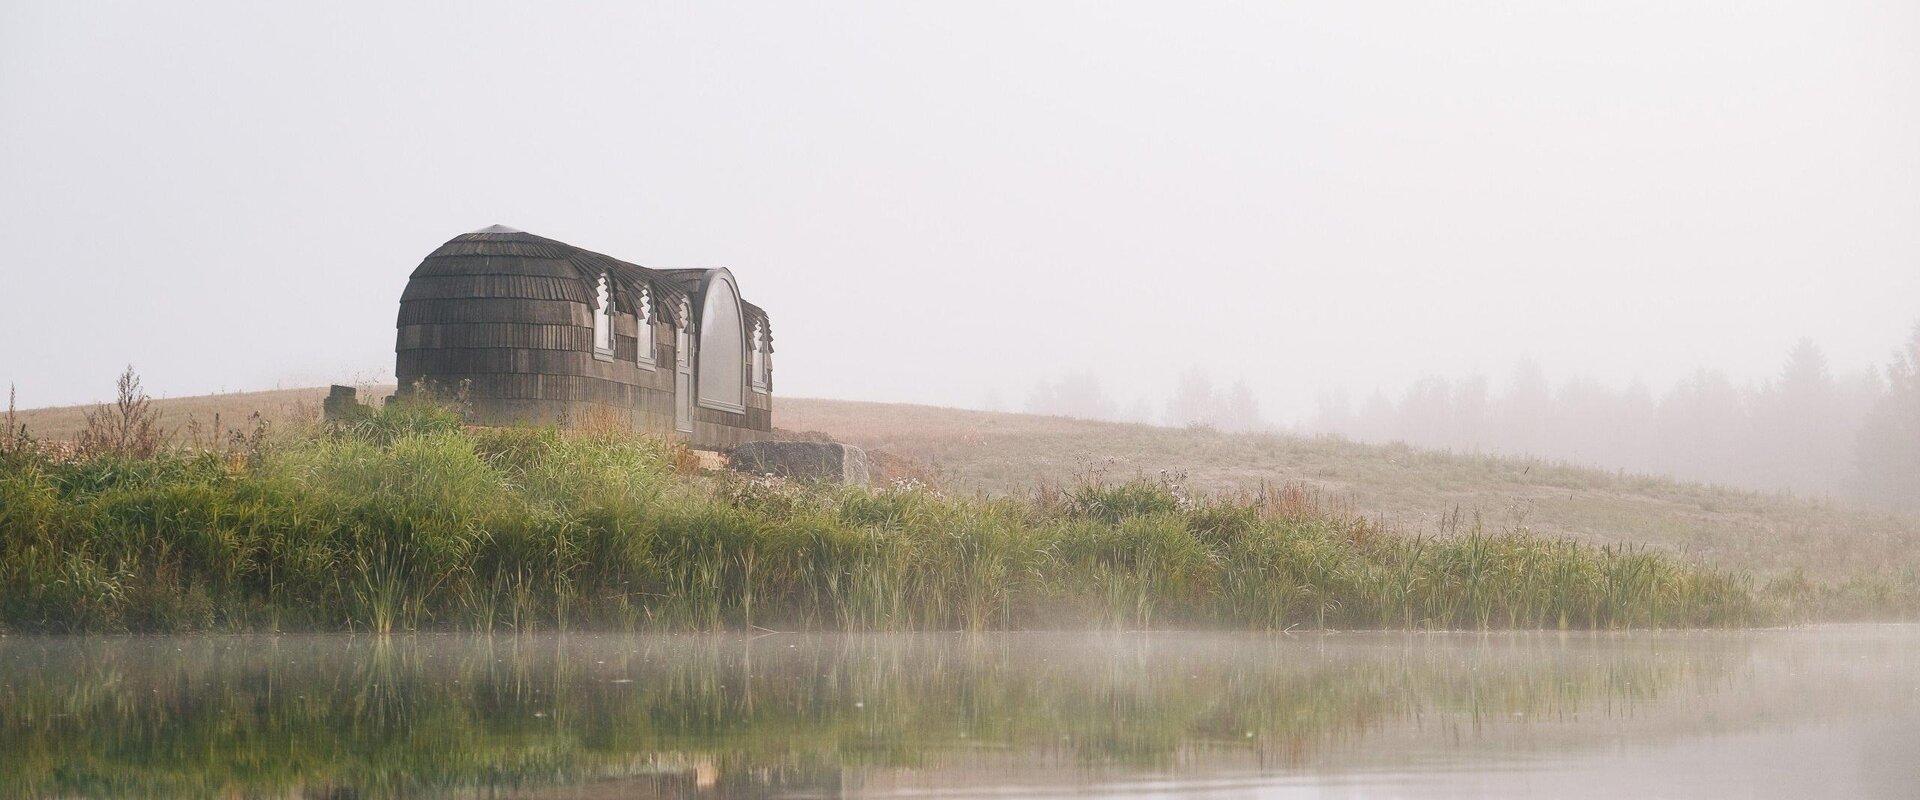 KODAS cozy igloo houses on the river bank